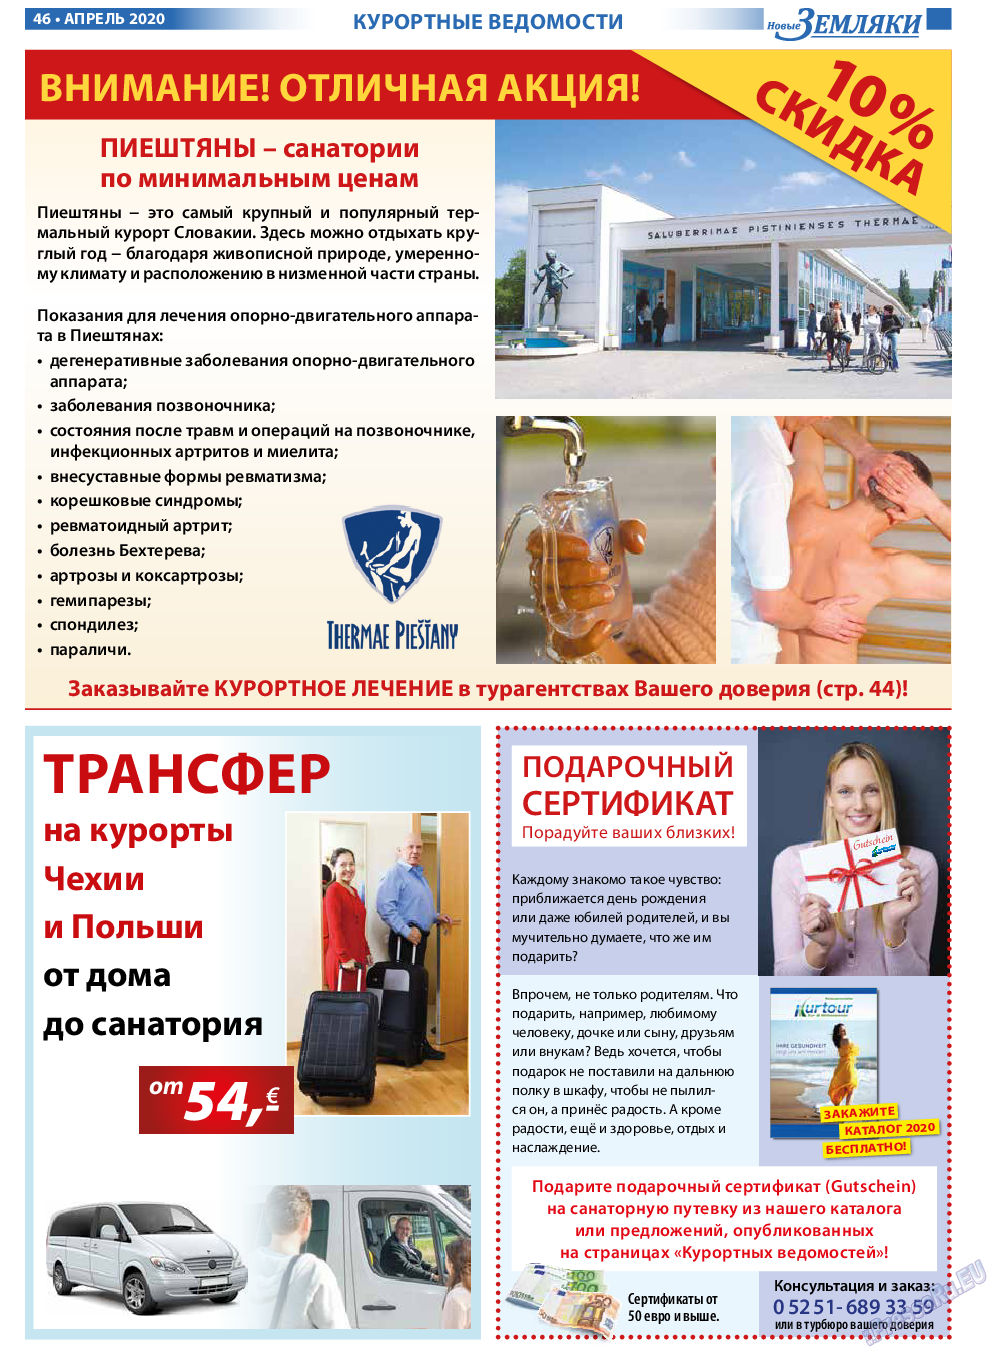 Новые Земляки, газета. 2020 №4 стр.46